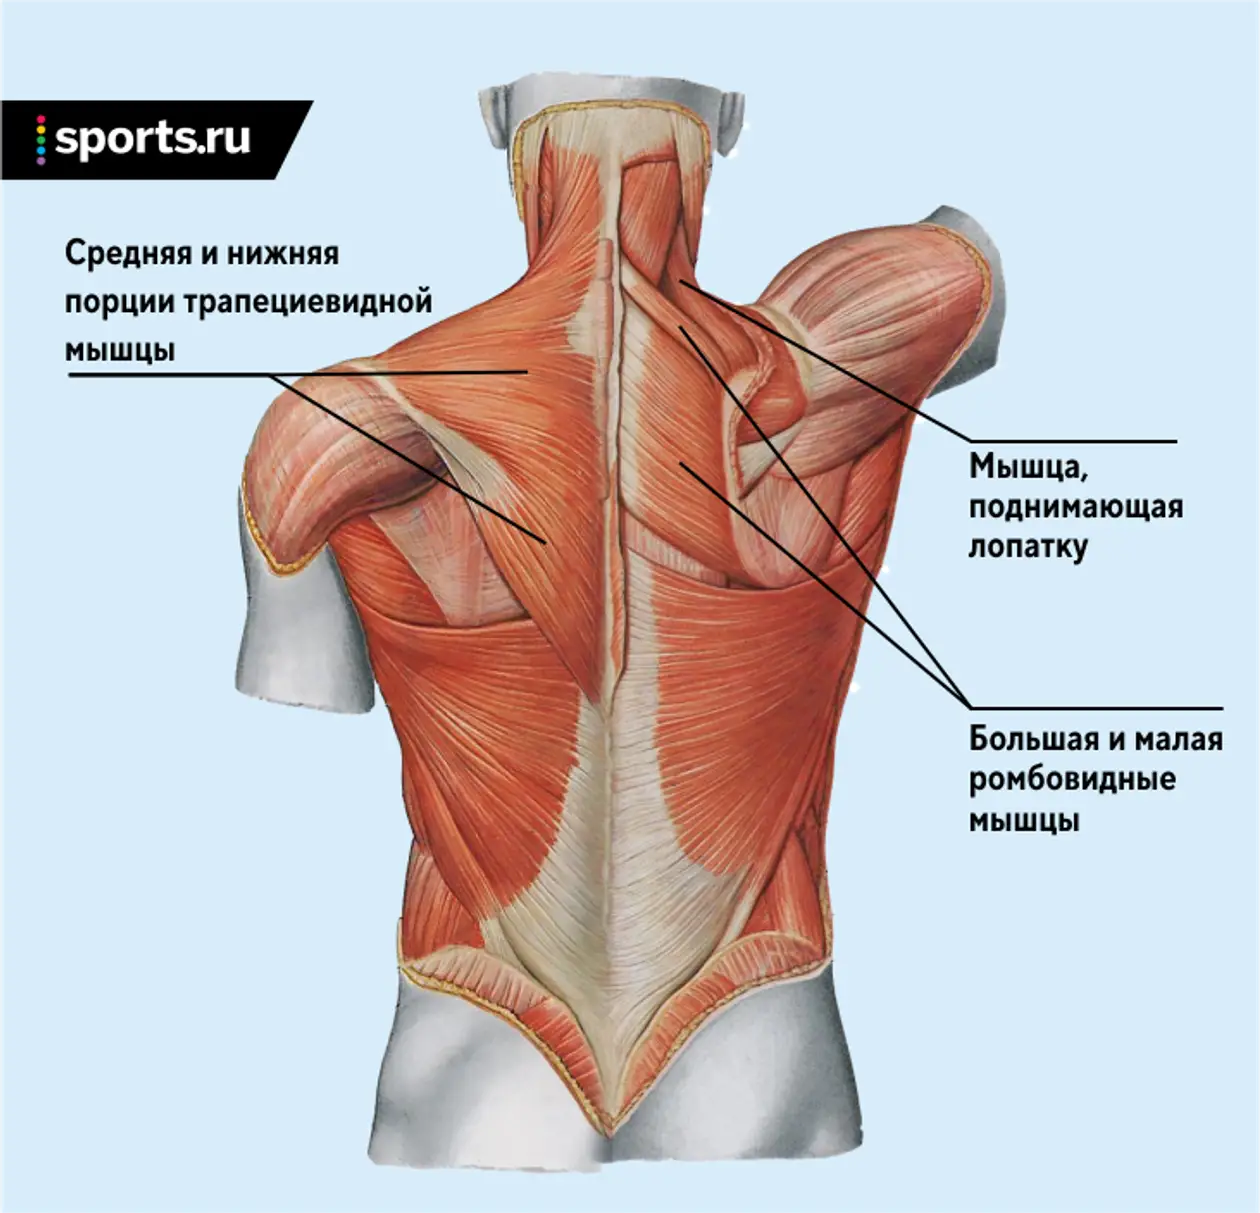 Нижний отдел спины. Трапециевидная мышца спины функции. Трапециевидная мышца спины анатомия. Трапециевидные мышцы верхняя средняя нижняя. Мышца поднимающая лопатку.